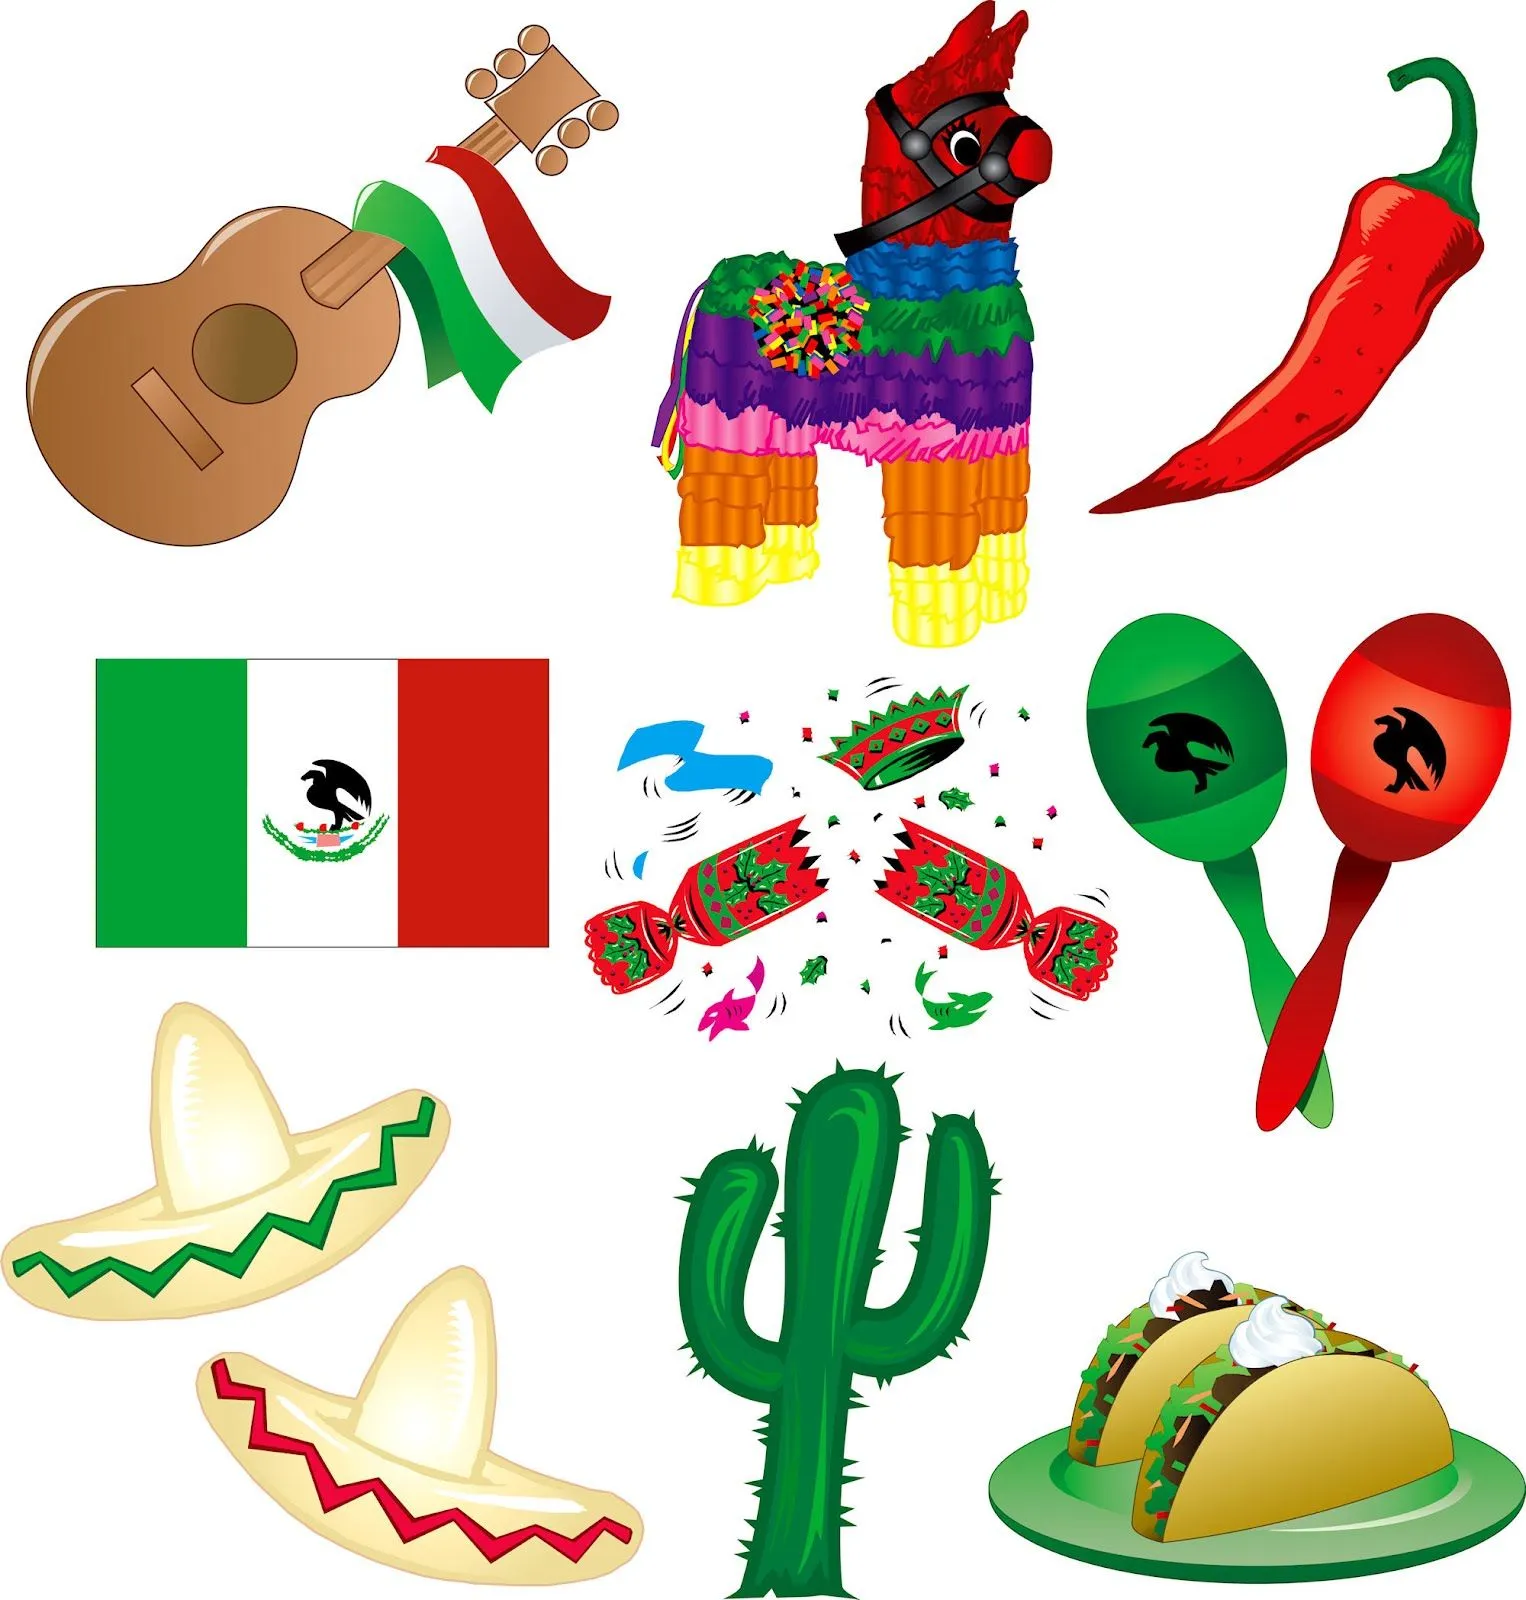 idool 20 imágenes gratis de los Símbolos Patrios de México para ...